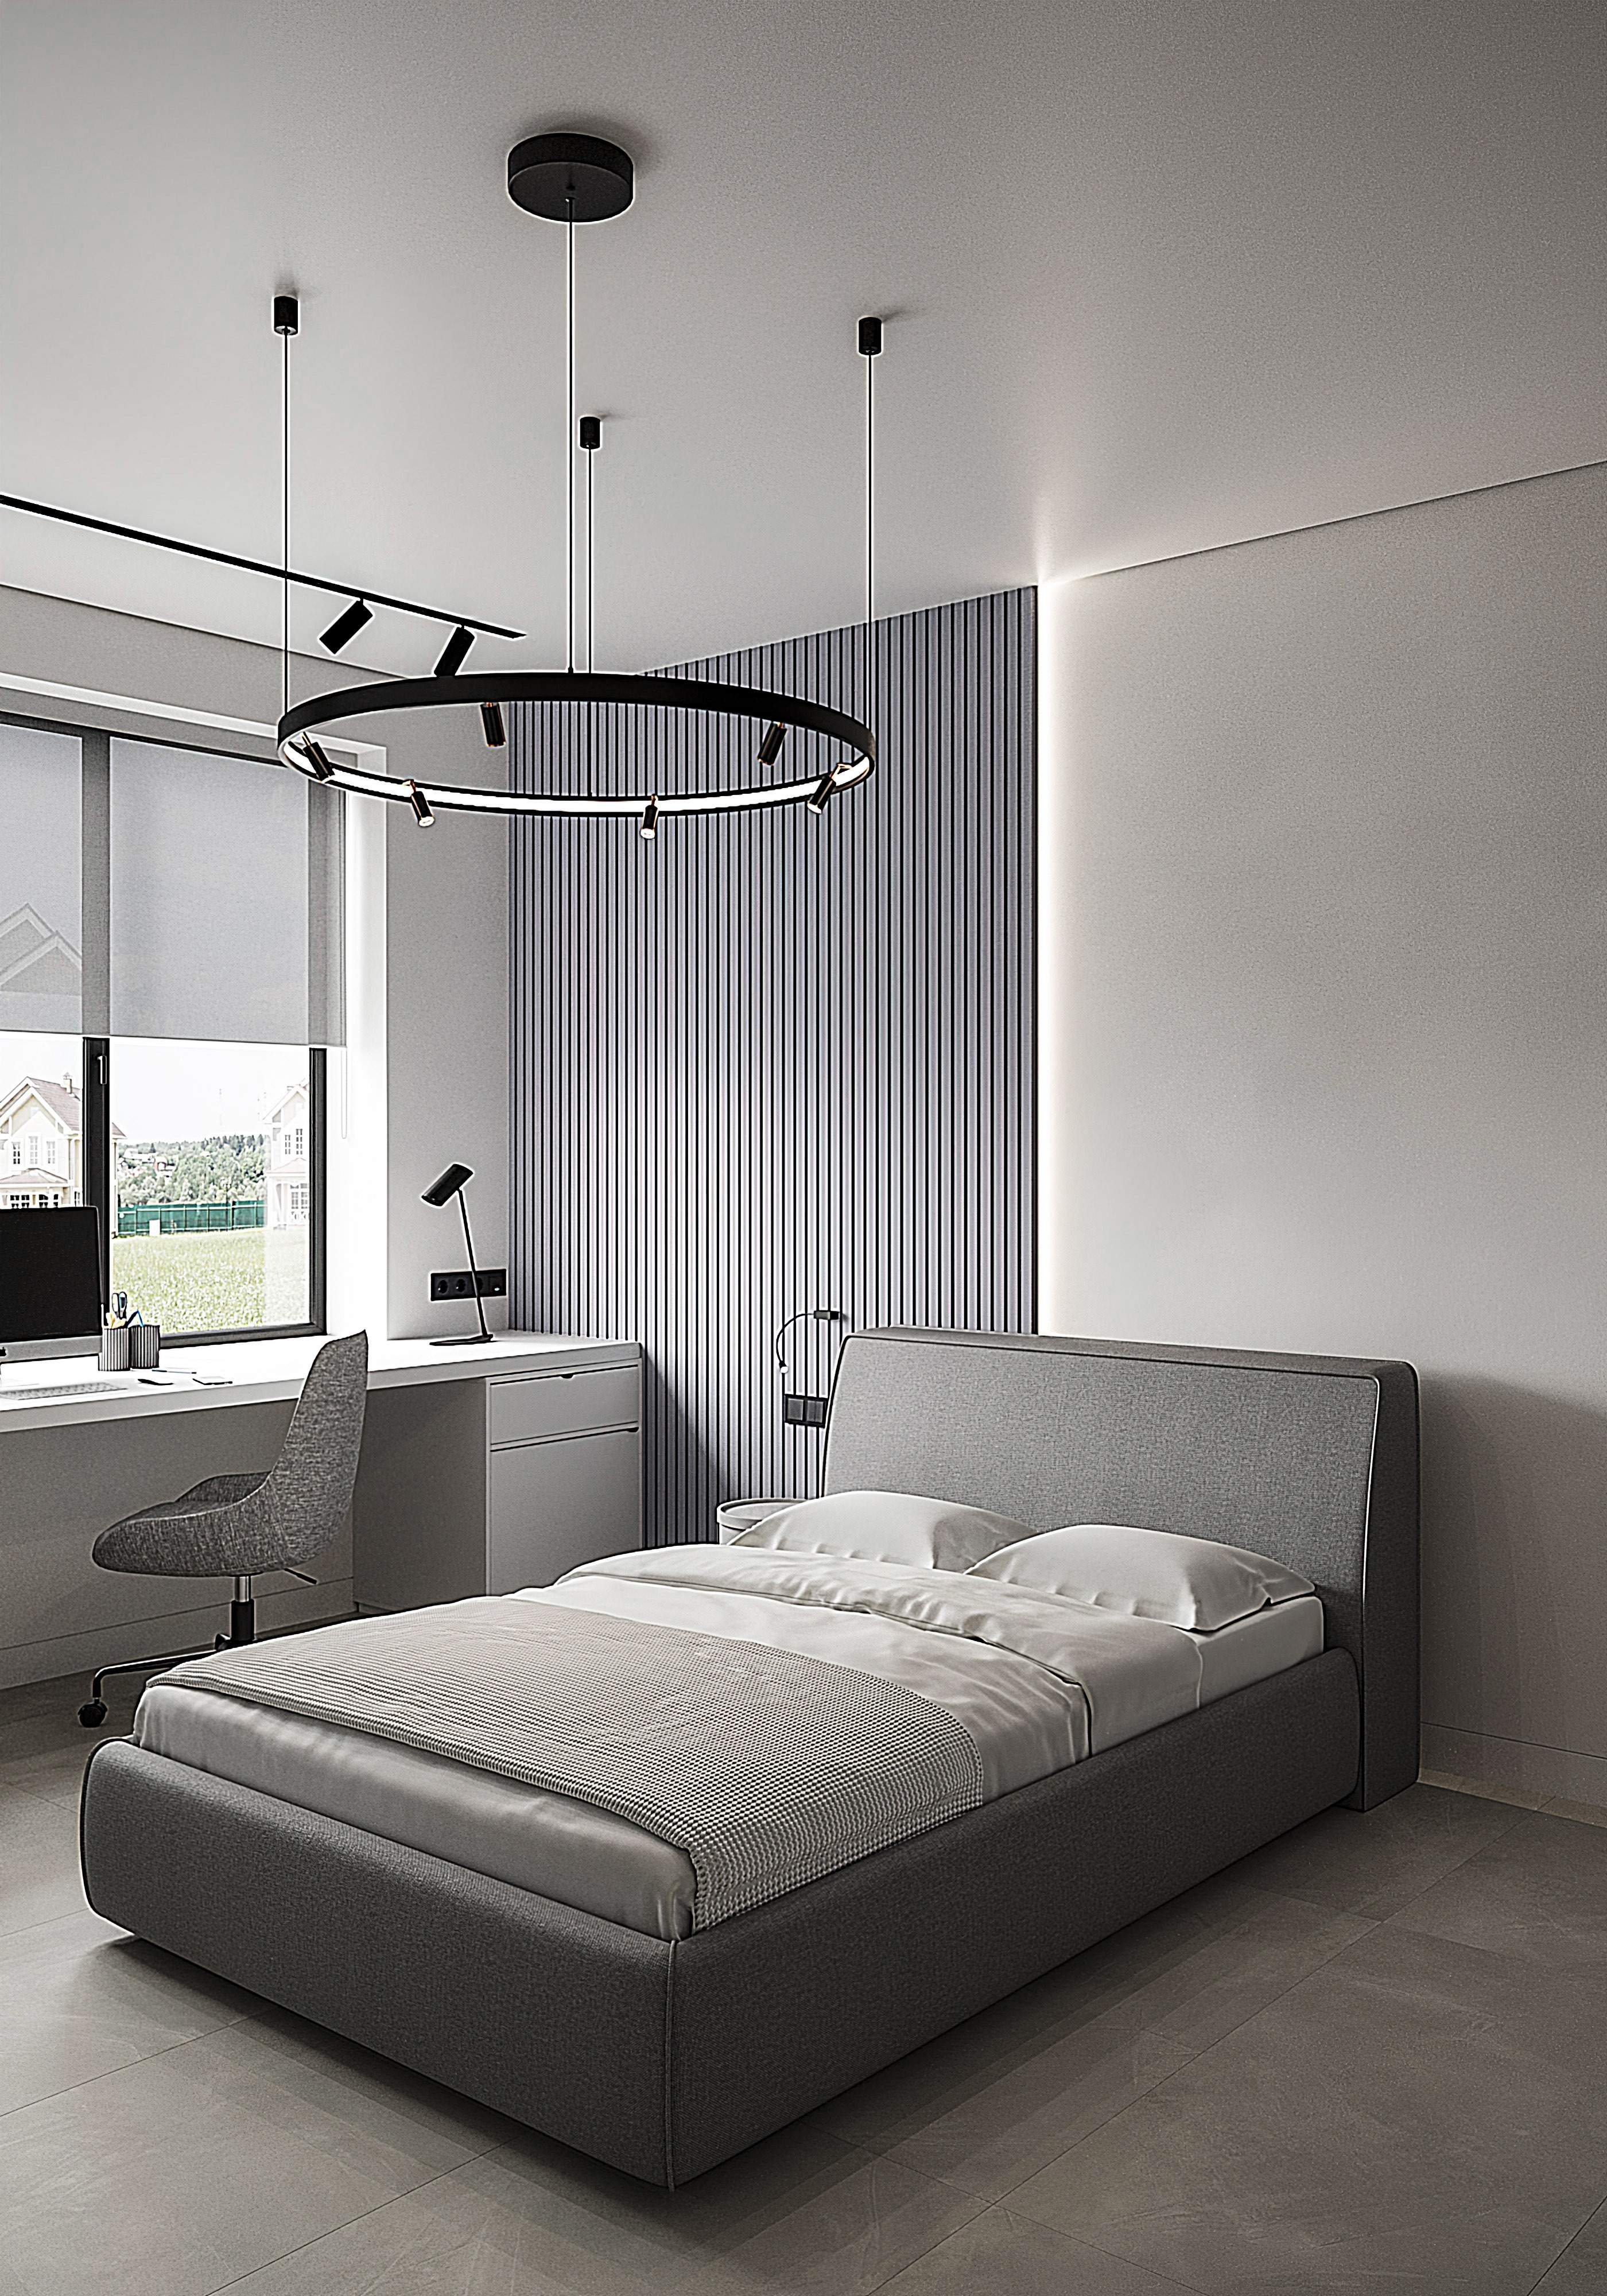 Интерьер спальни с рейками с подсветкой, бра над кроватью, подсветкой светодиодной и светильниками над кроватью